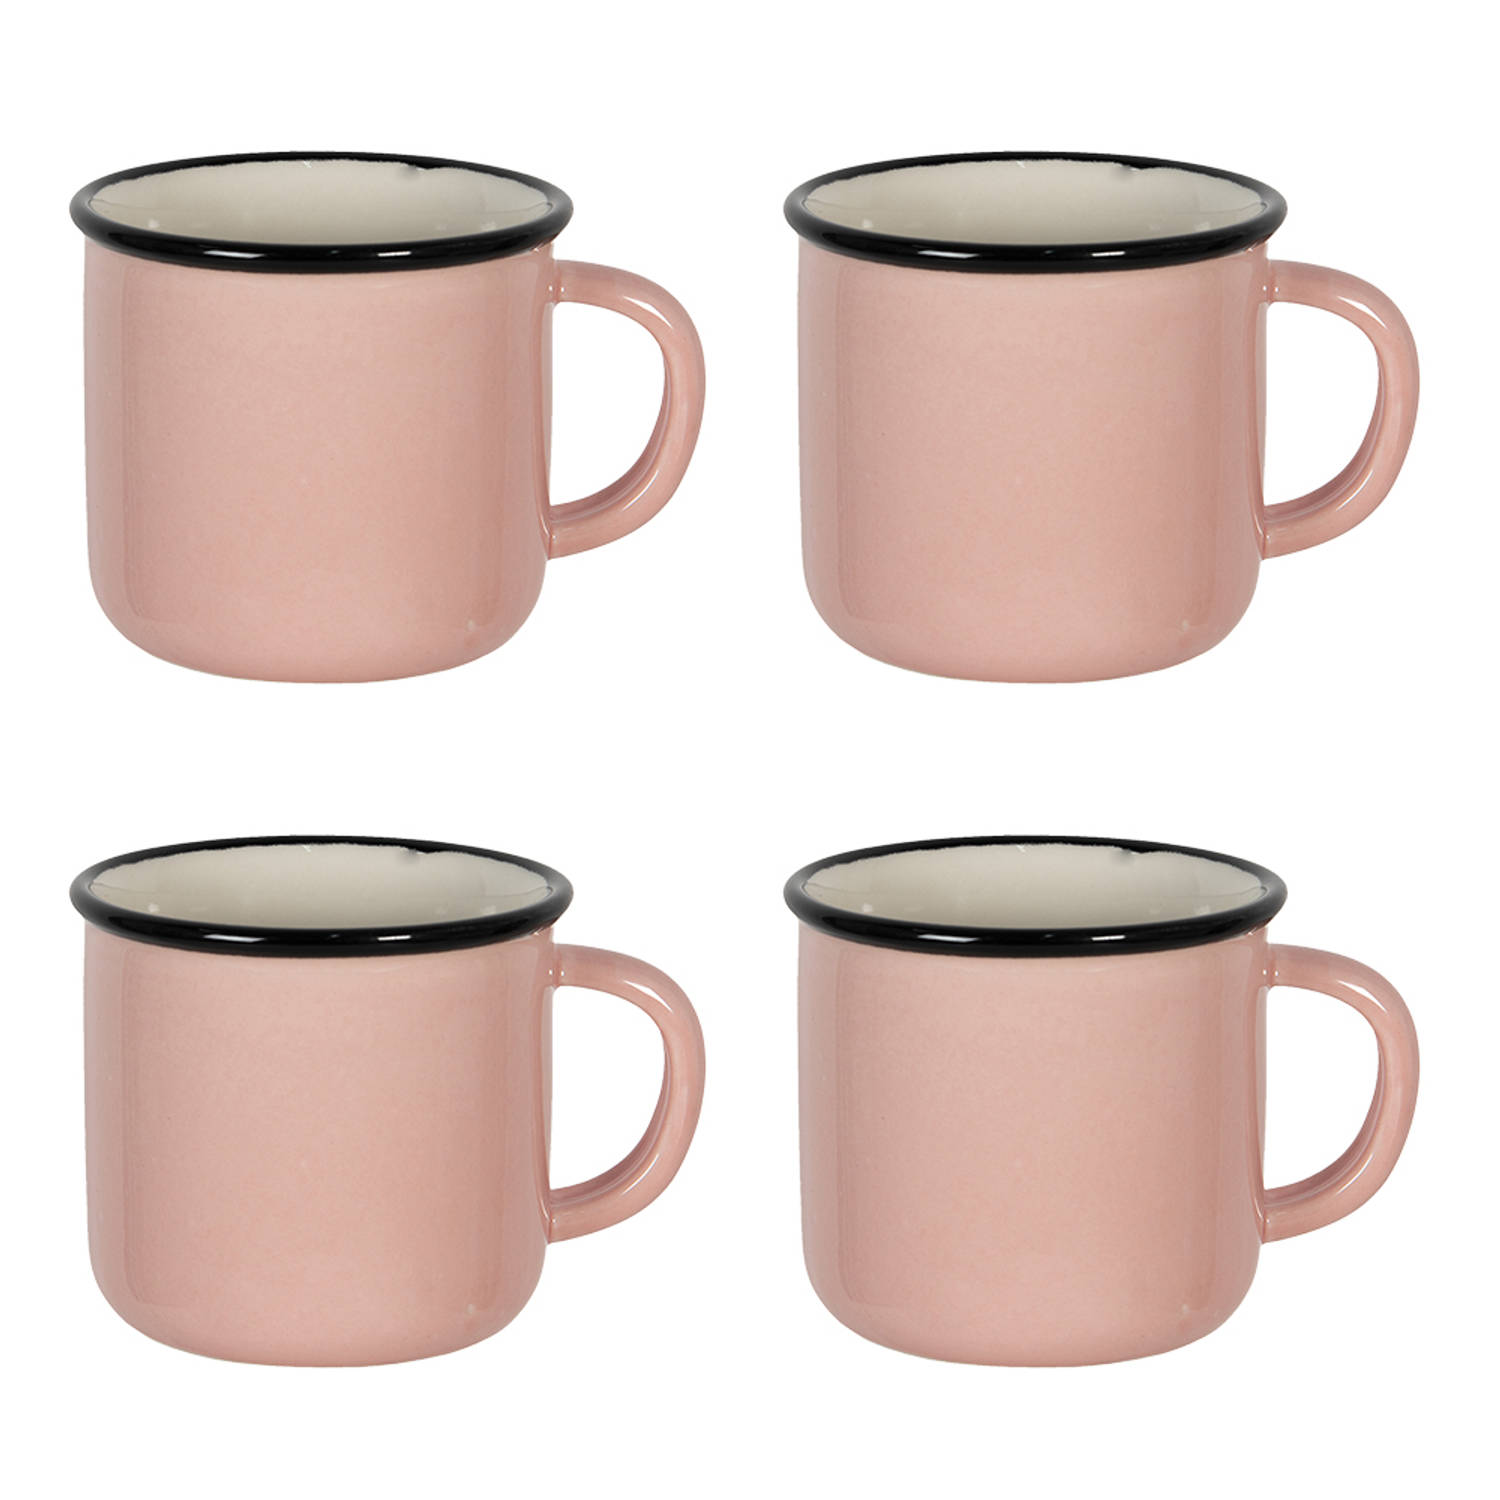 HAES DECO - Mokken set van 4 - formaat 15x11x9 cm / 300 ml - kleuren Roze / Zwart / Wit - Bedrukt Keramiek - Collectie: Casual Pink - Mokkenset, Koffiemok, Koffiebeker